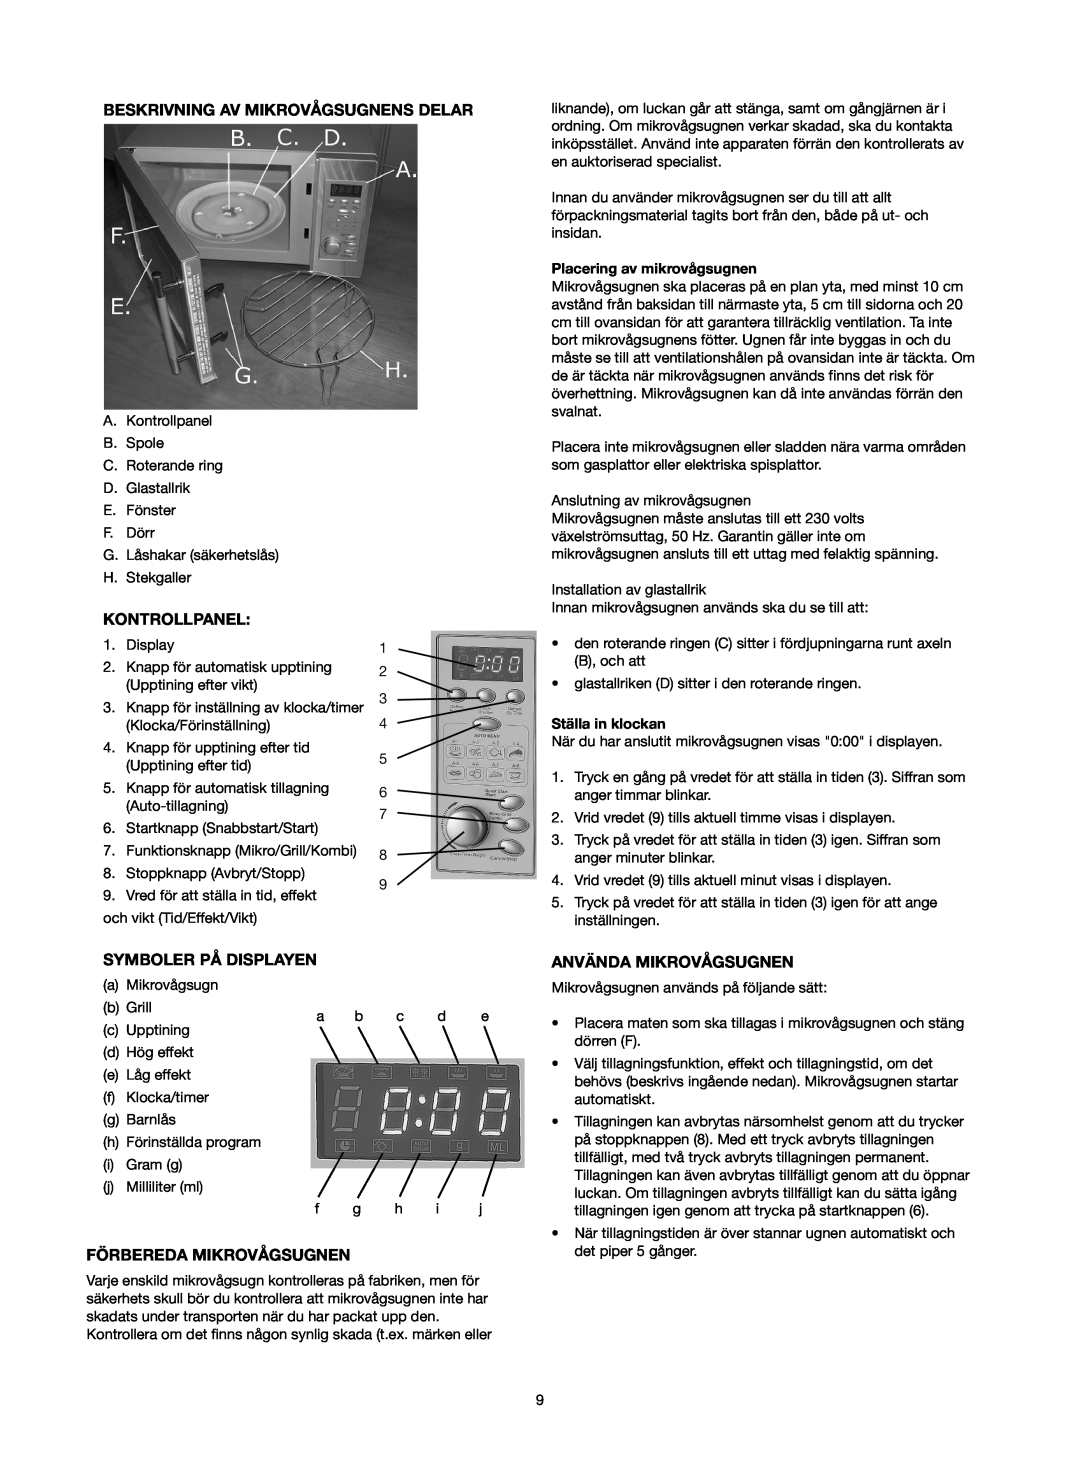 Melissa 753-093 manual Beskrivning Av Mikrovågsugnens Delar, Kontrollpanel, Symboler På Displayen, Förbereda Mikrovågsugnen 